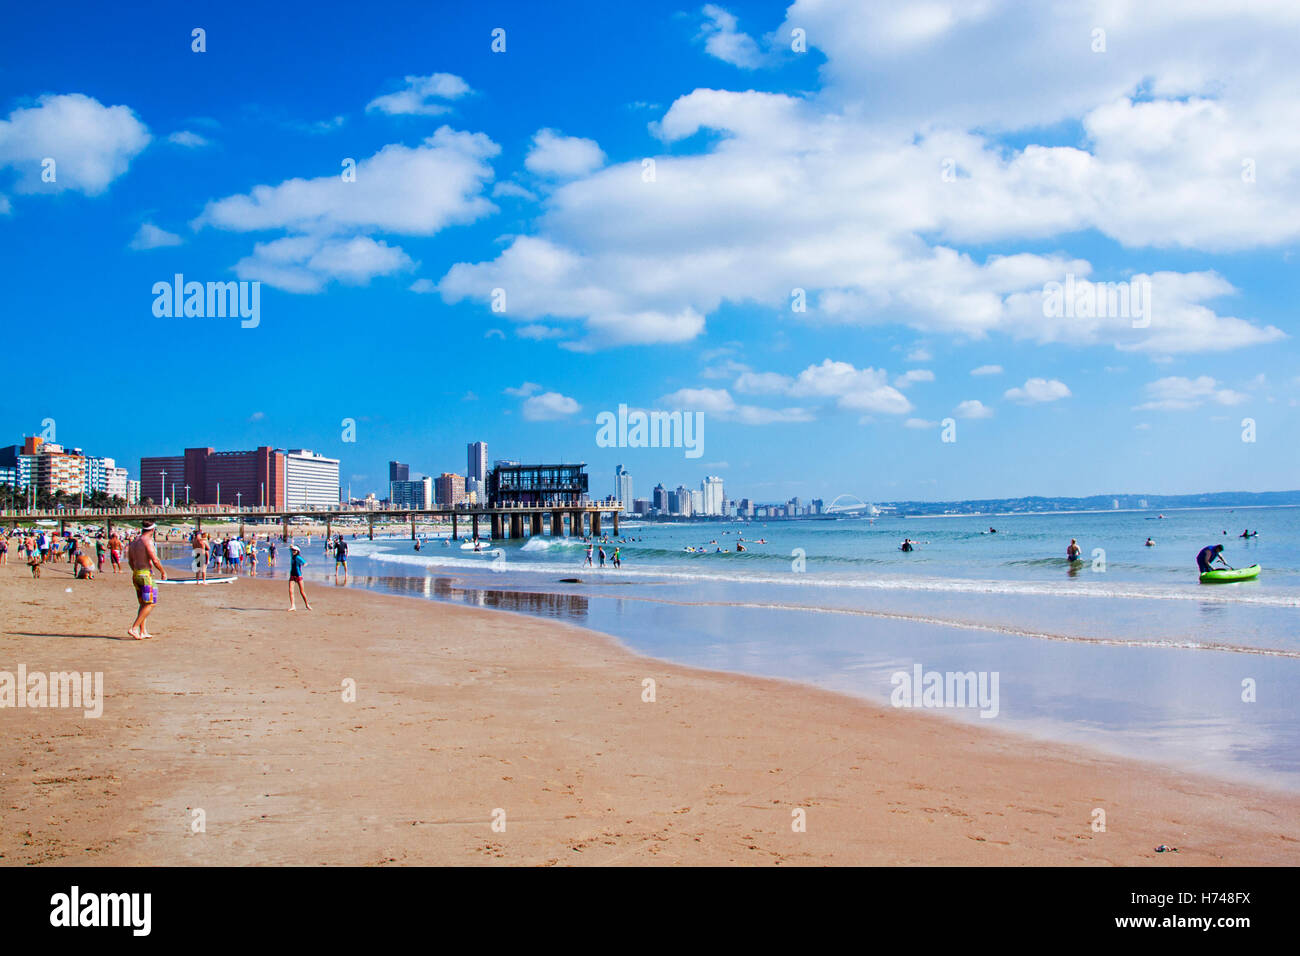 Les gens apprécient le matin visite de Vetchies beach sur le Golden Mile beach front contre city skyline Banque D'Images